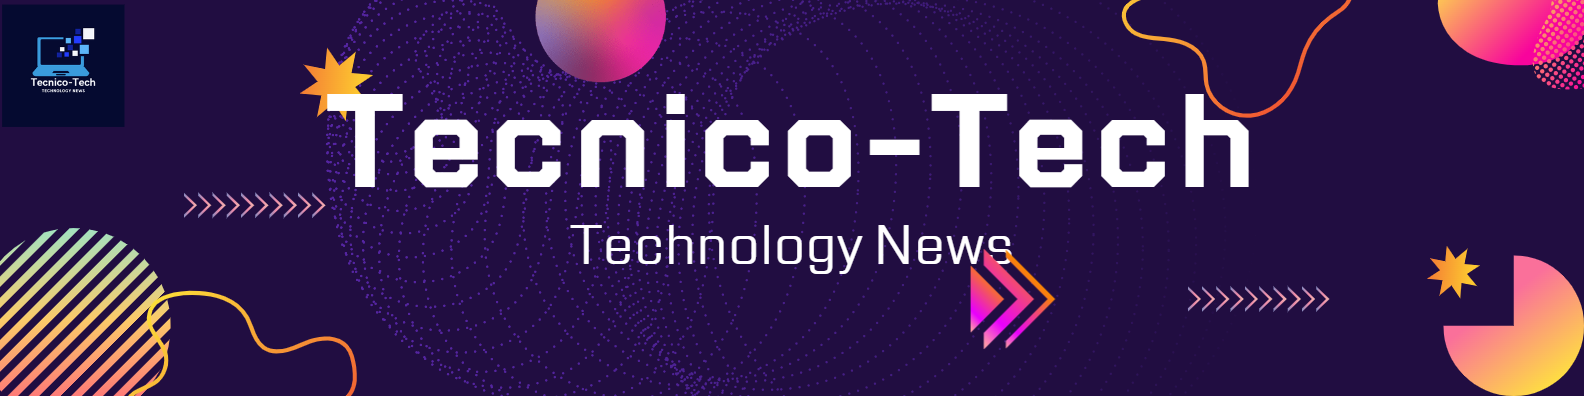 Tecnico-Tech